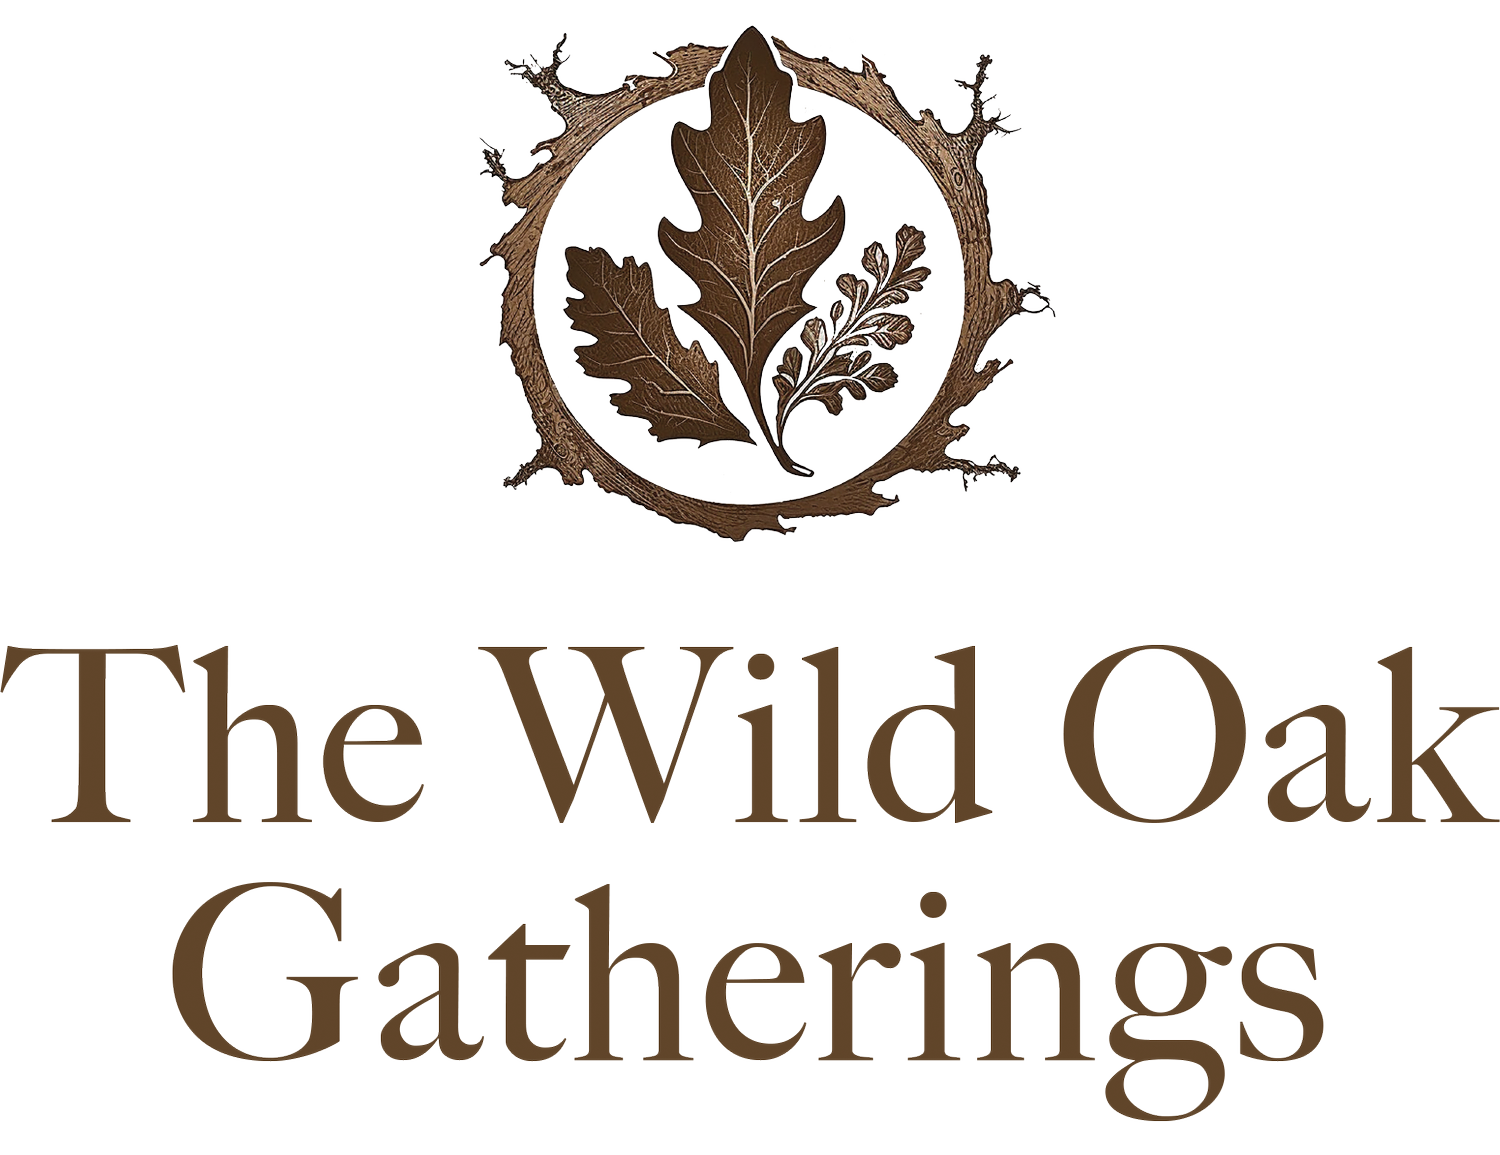 The Wild Oak Gatherings